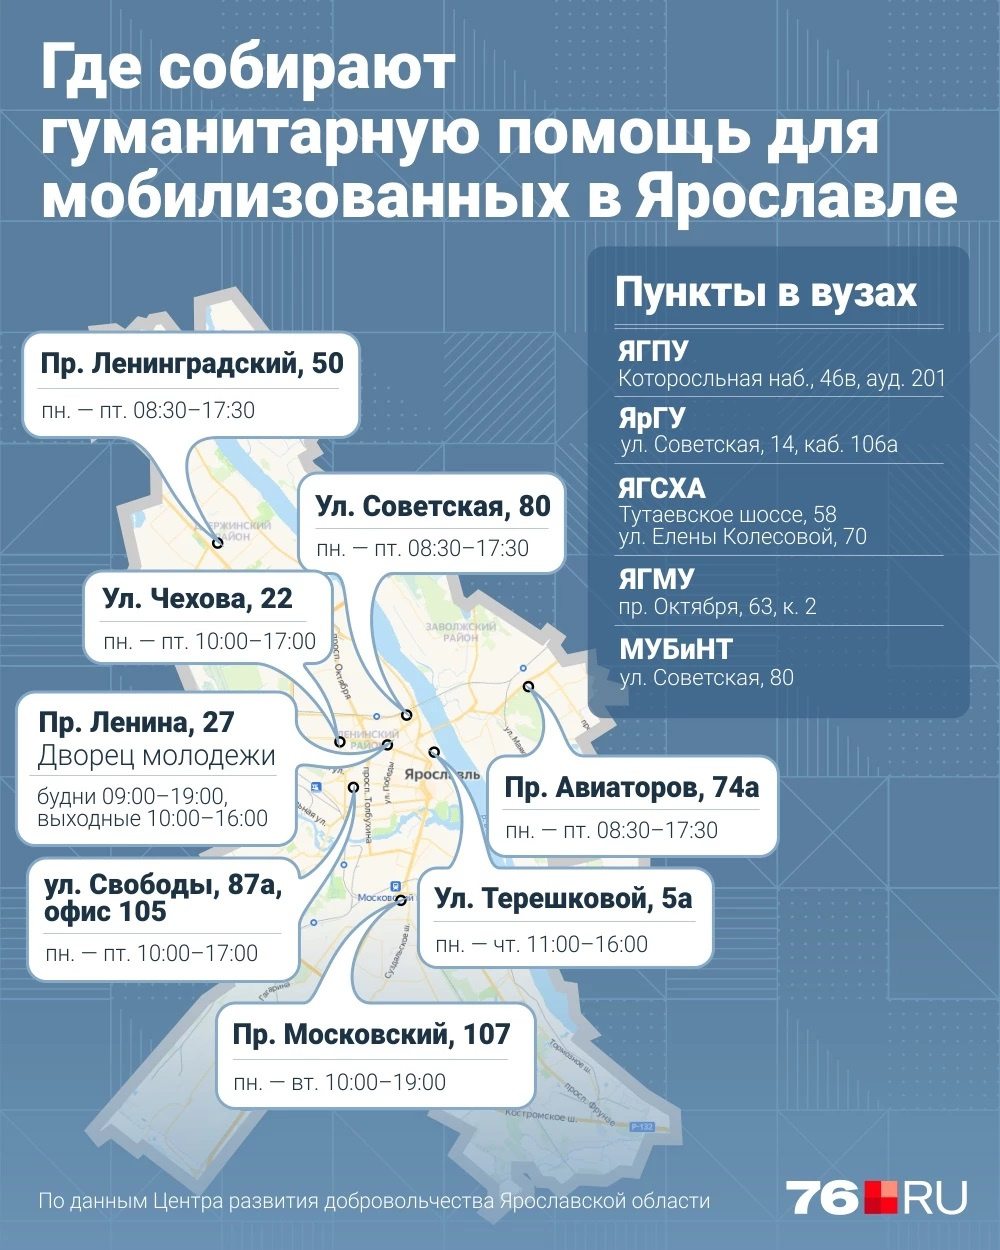 Куда можно принести вещи для мобилизованных в Ярославле